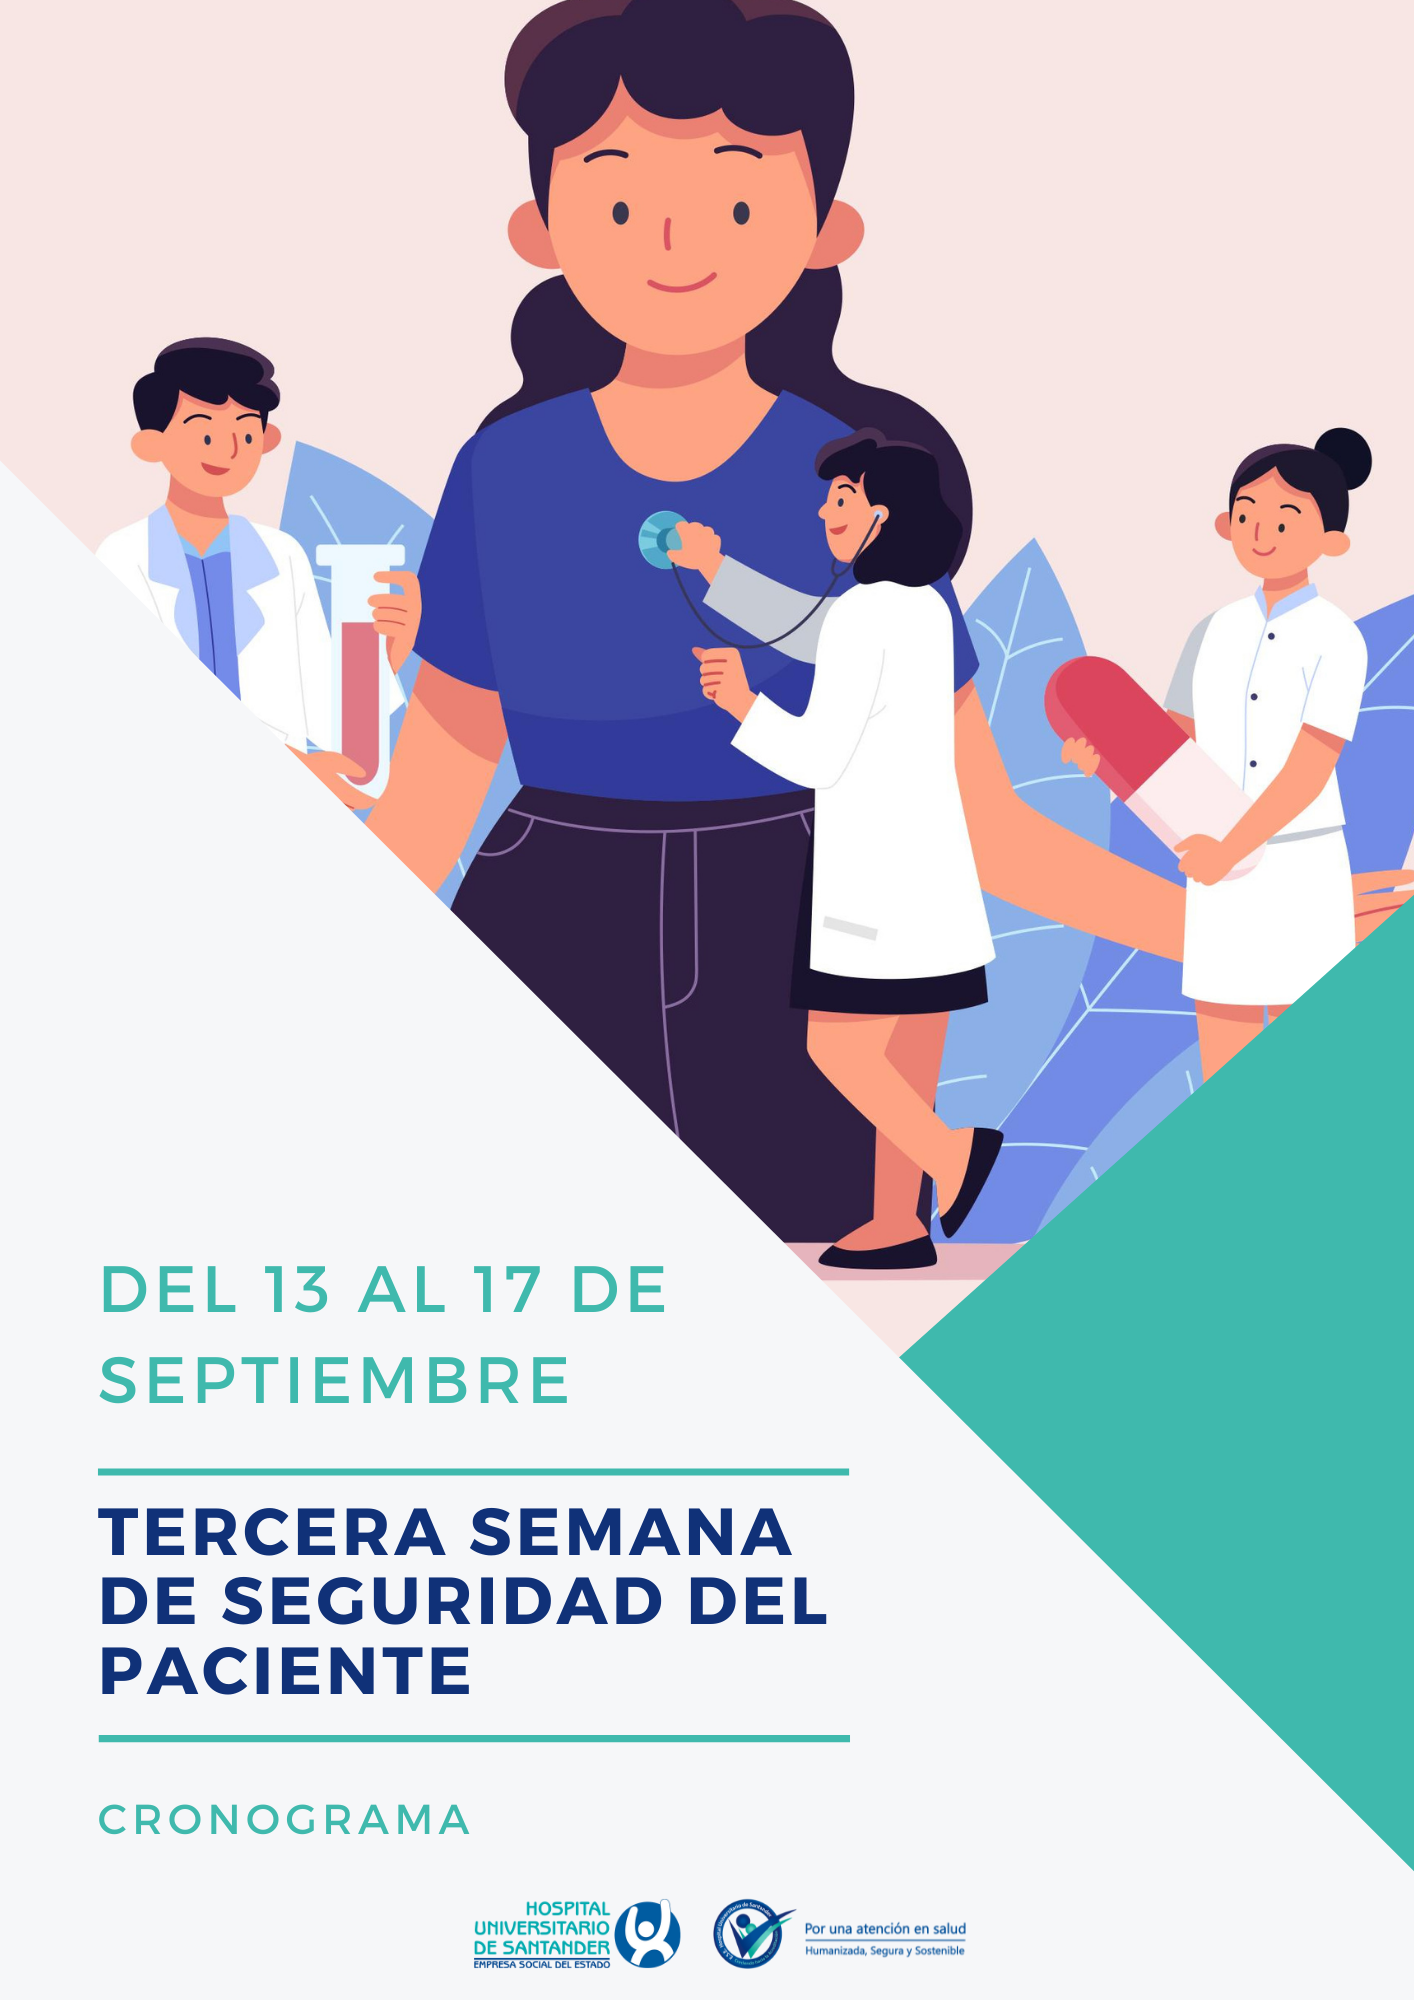 Programación de la tercera semana de seguridad del paciente del 13 al 17 de septiembre